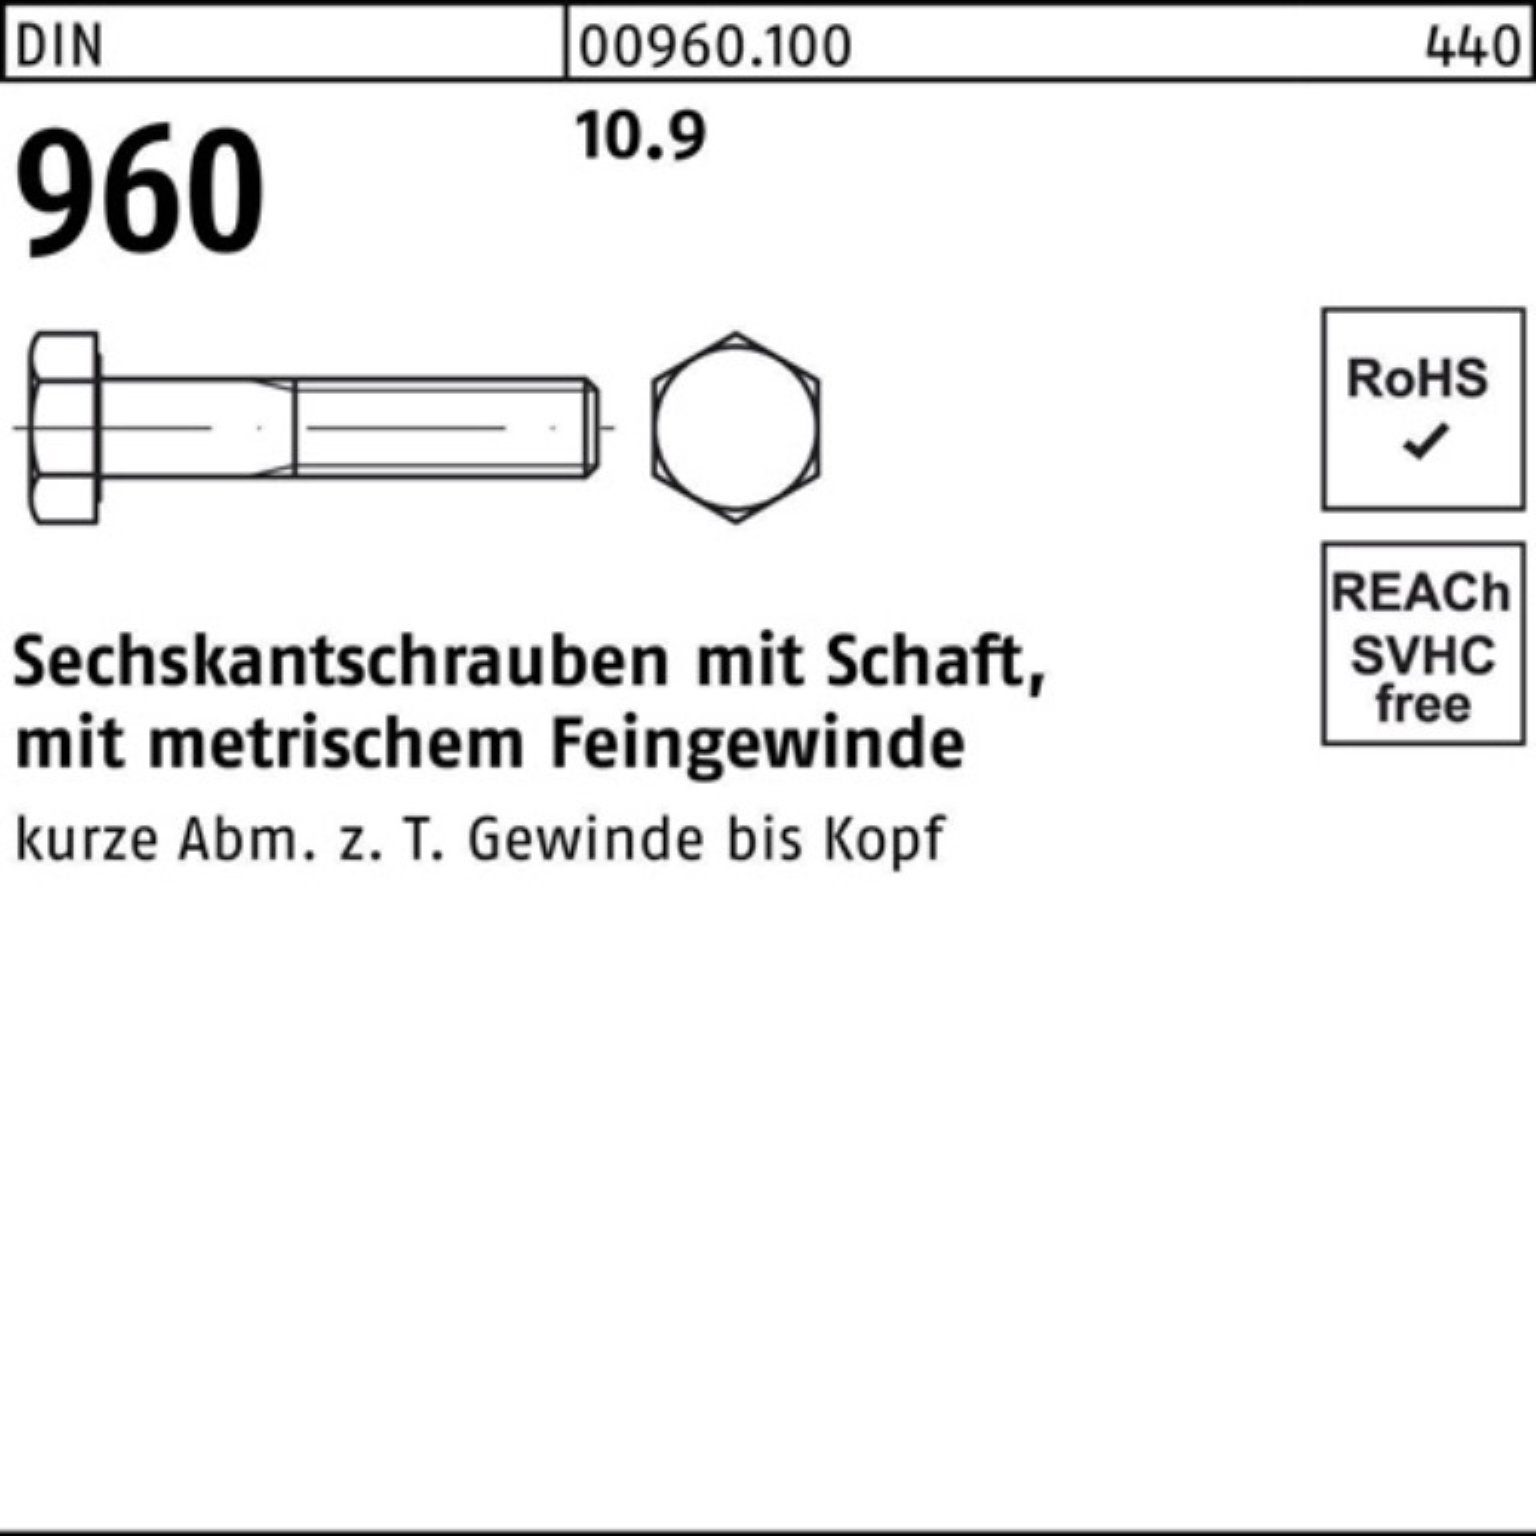 DIN 100 100er Reyher Stü M10x1,25x 70 Sechskantschraube Pack 10.9 Schaft Sechskantschraube 960